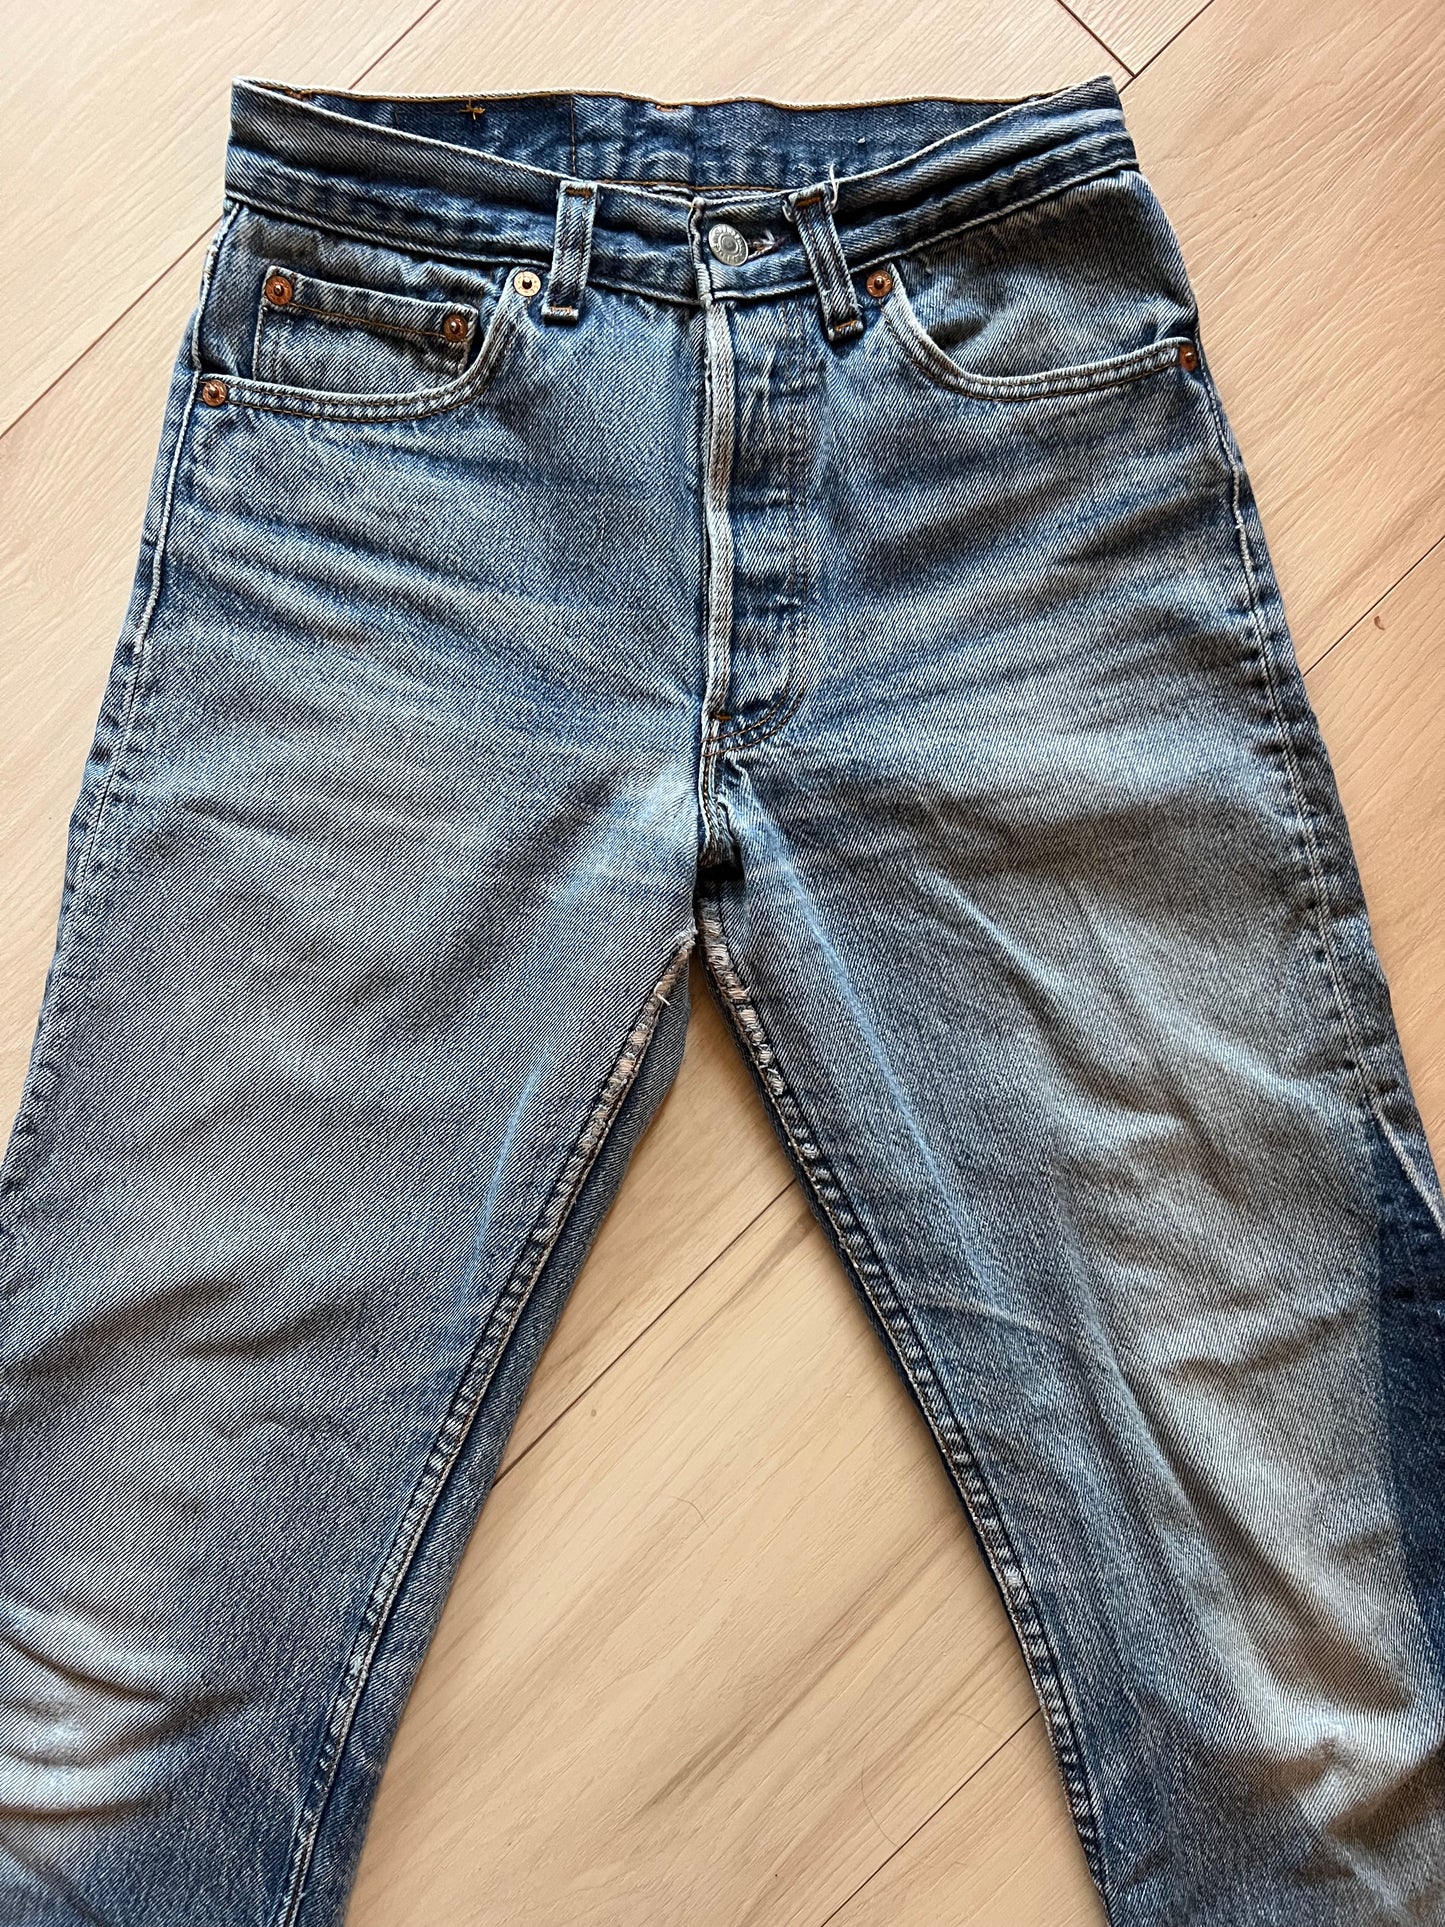 Size 25 Levi’s 501 jeans